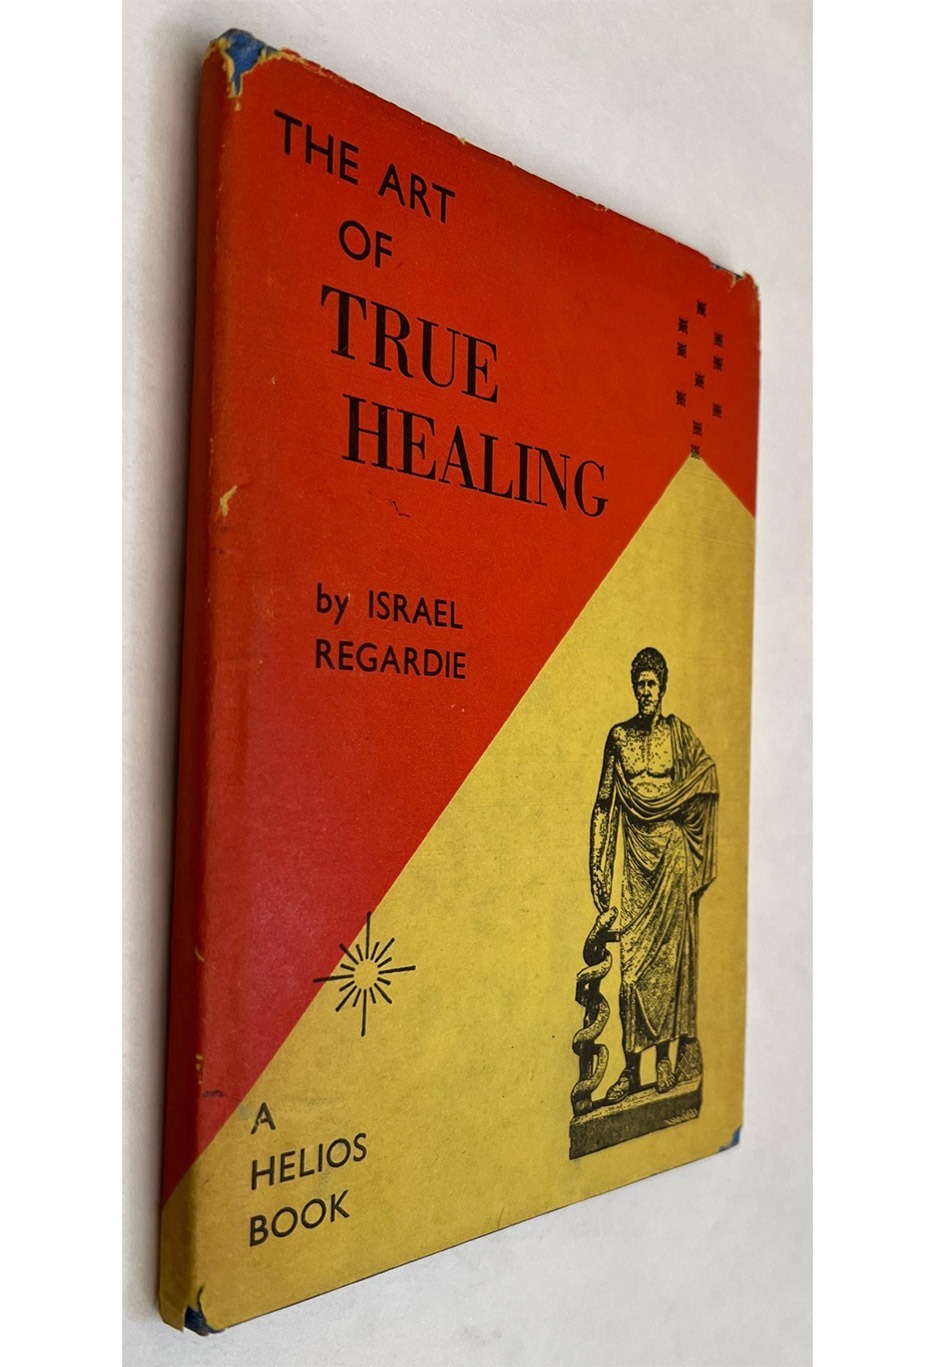 The art of True healing